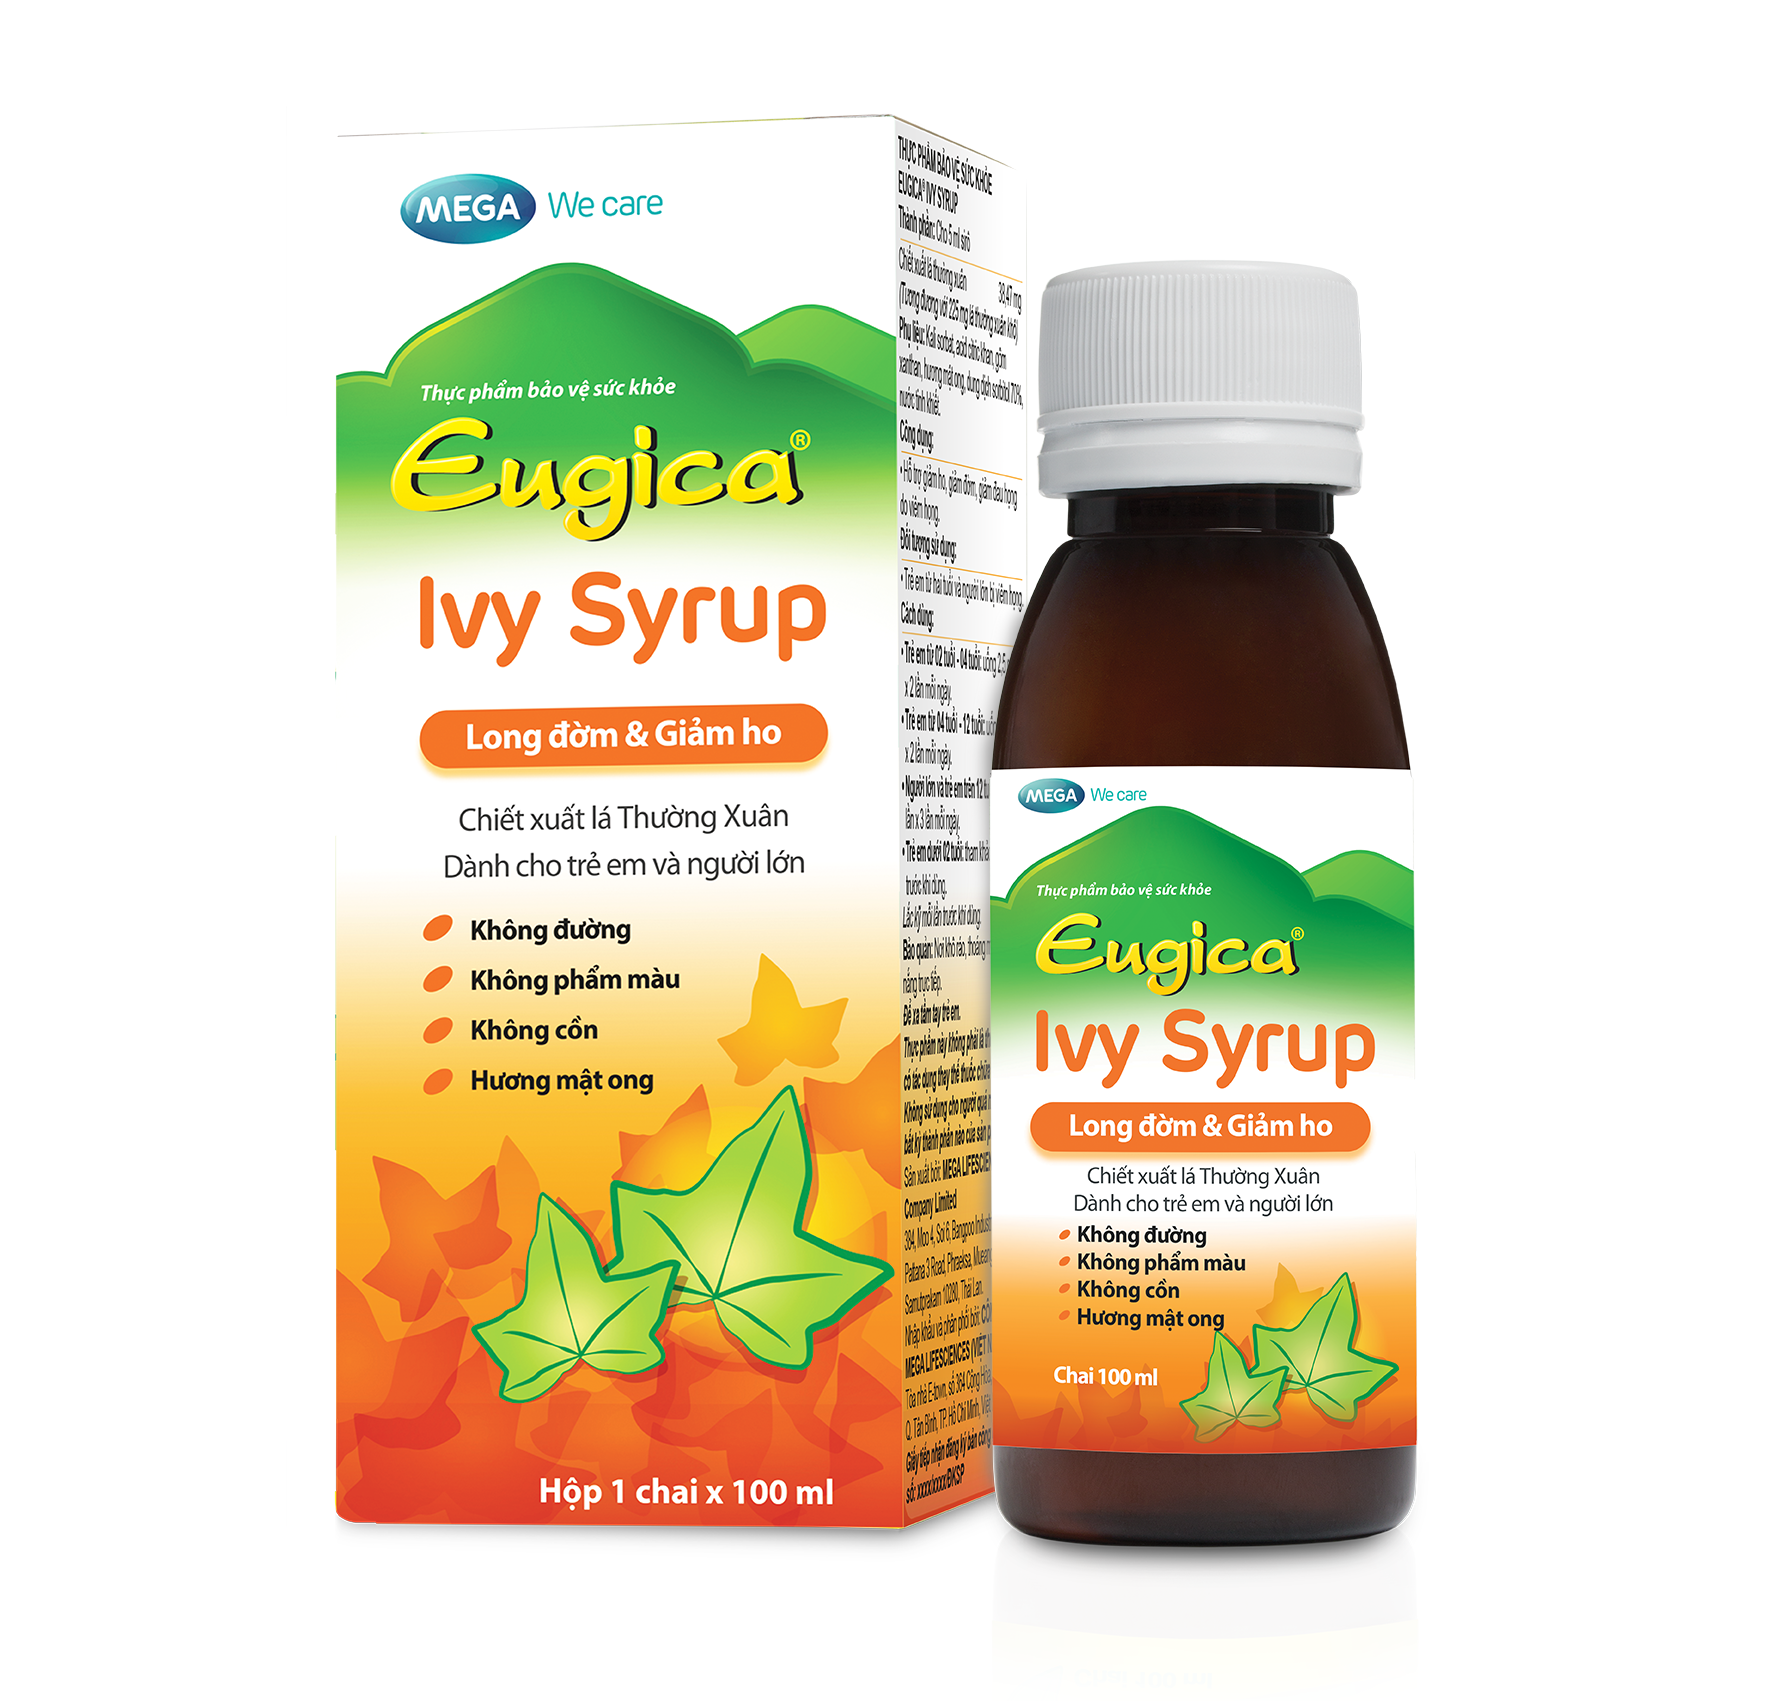 Siro thảo dược cao lá thường xuân hỗ trợ long đờm, giảm ho EUGICA IVY SYRUP (Hộp 1 chai x 100 ml)